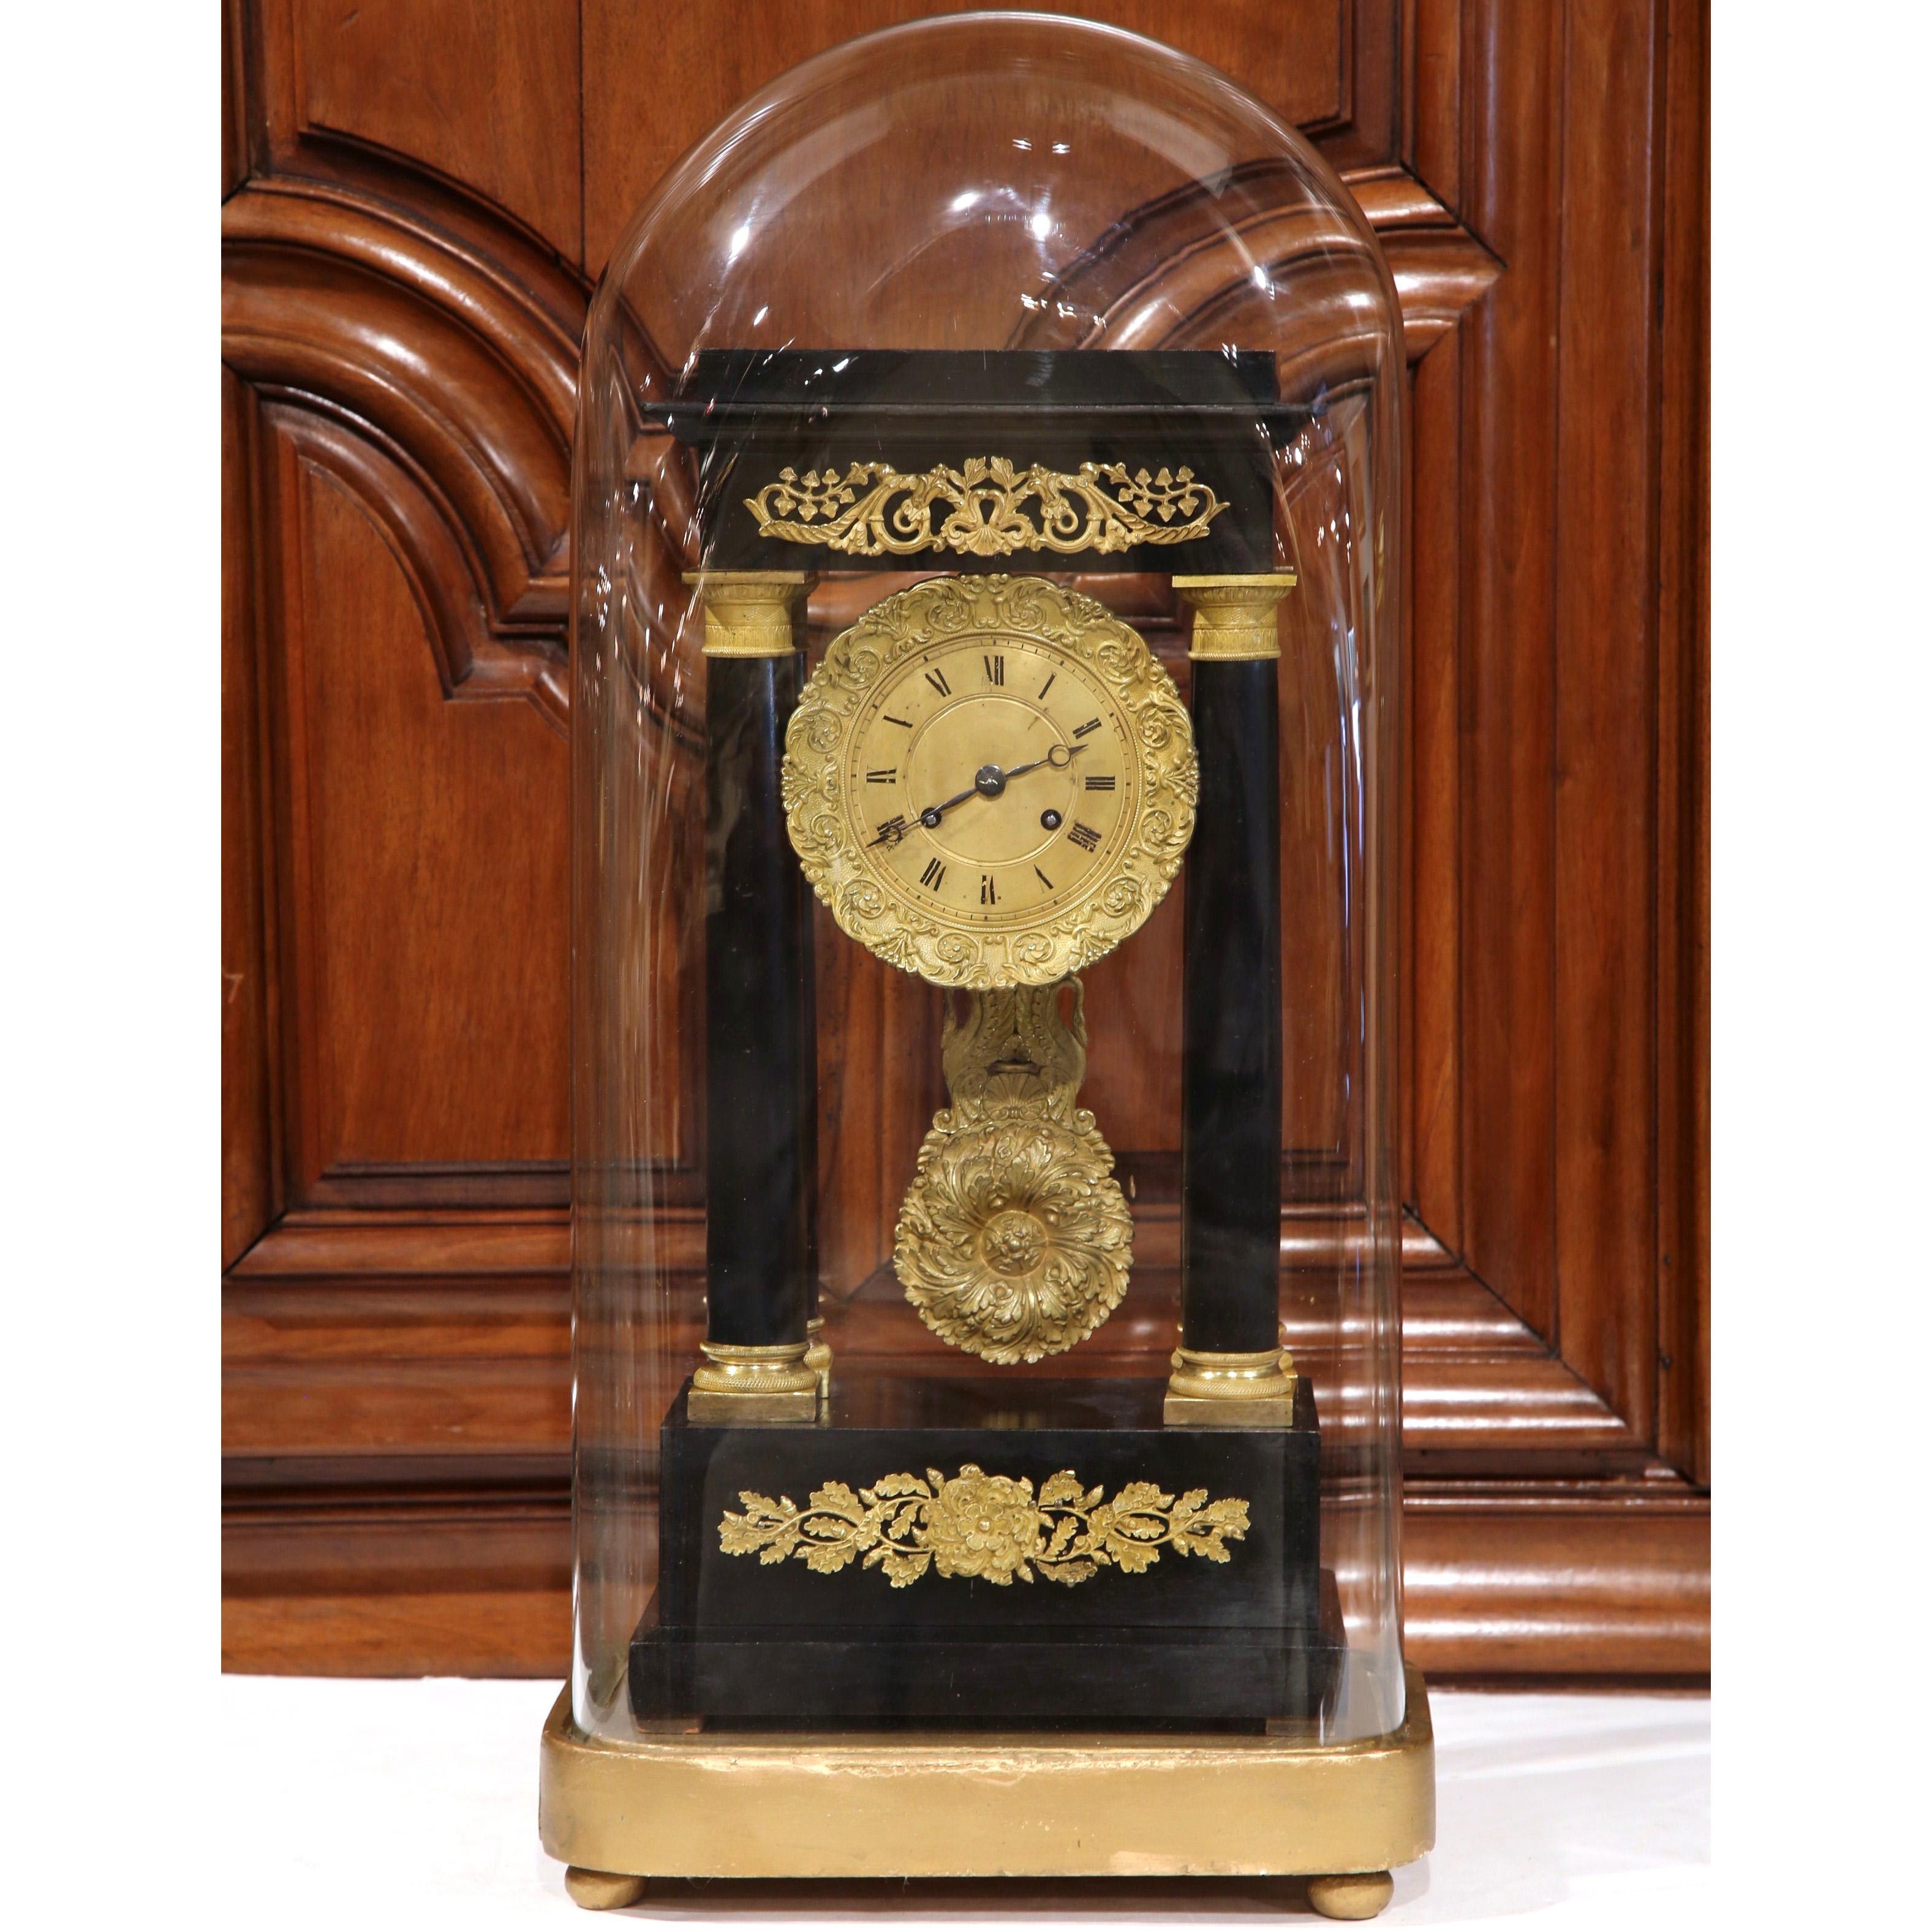 19th Century French Empire Portico Mantel Clock in Original Glass Dome In Excellent Condition For Sale In Dallas, TX